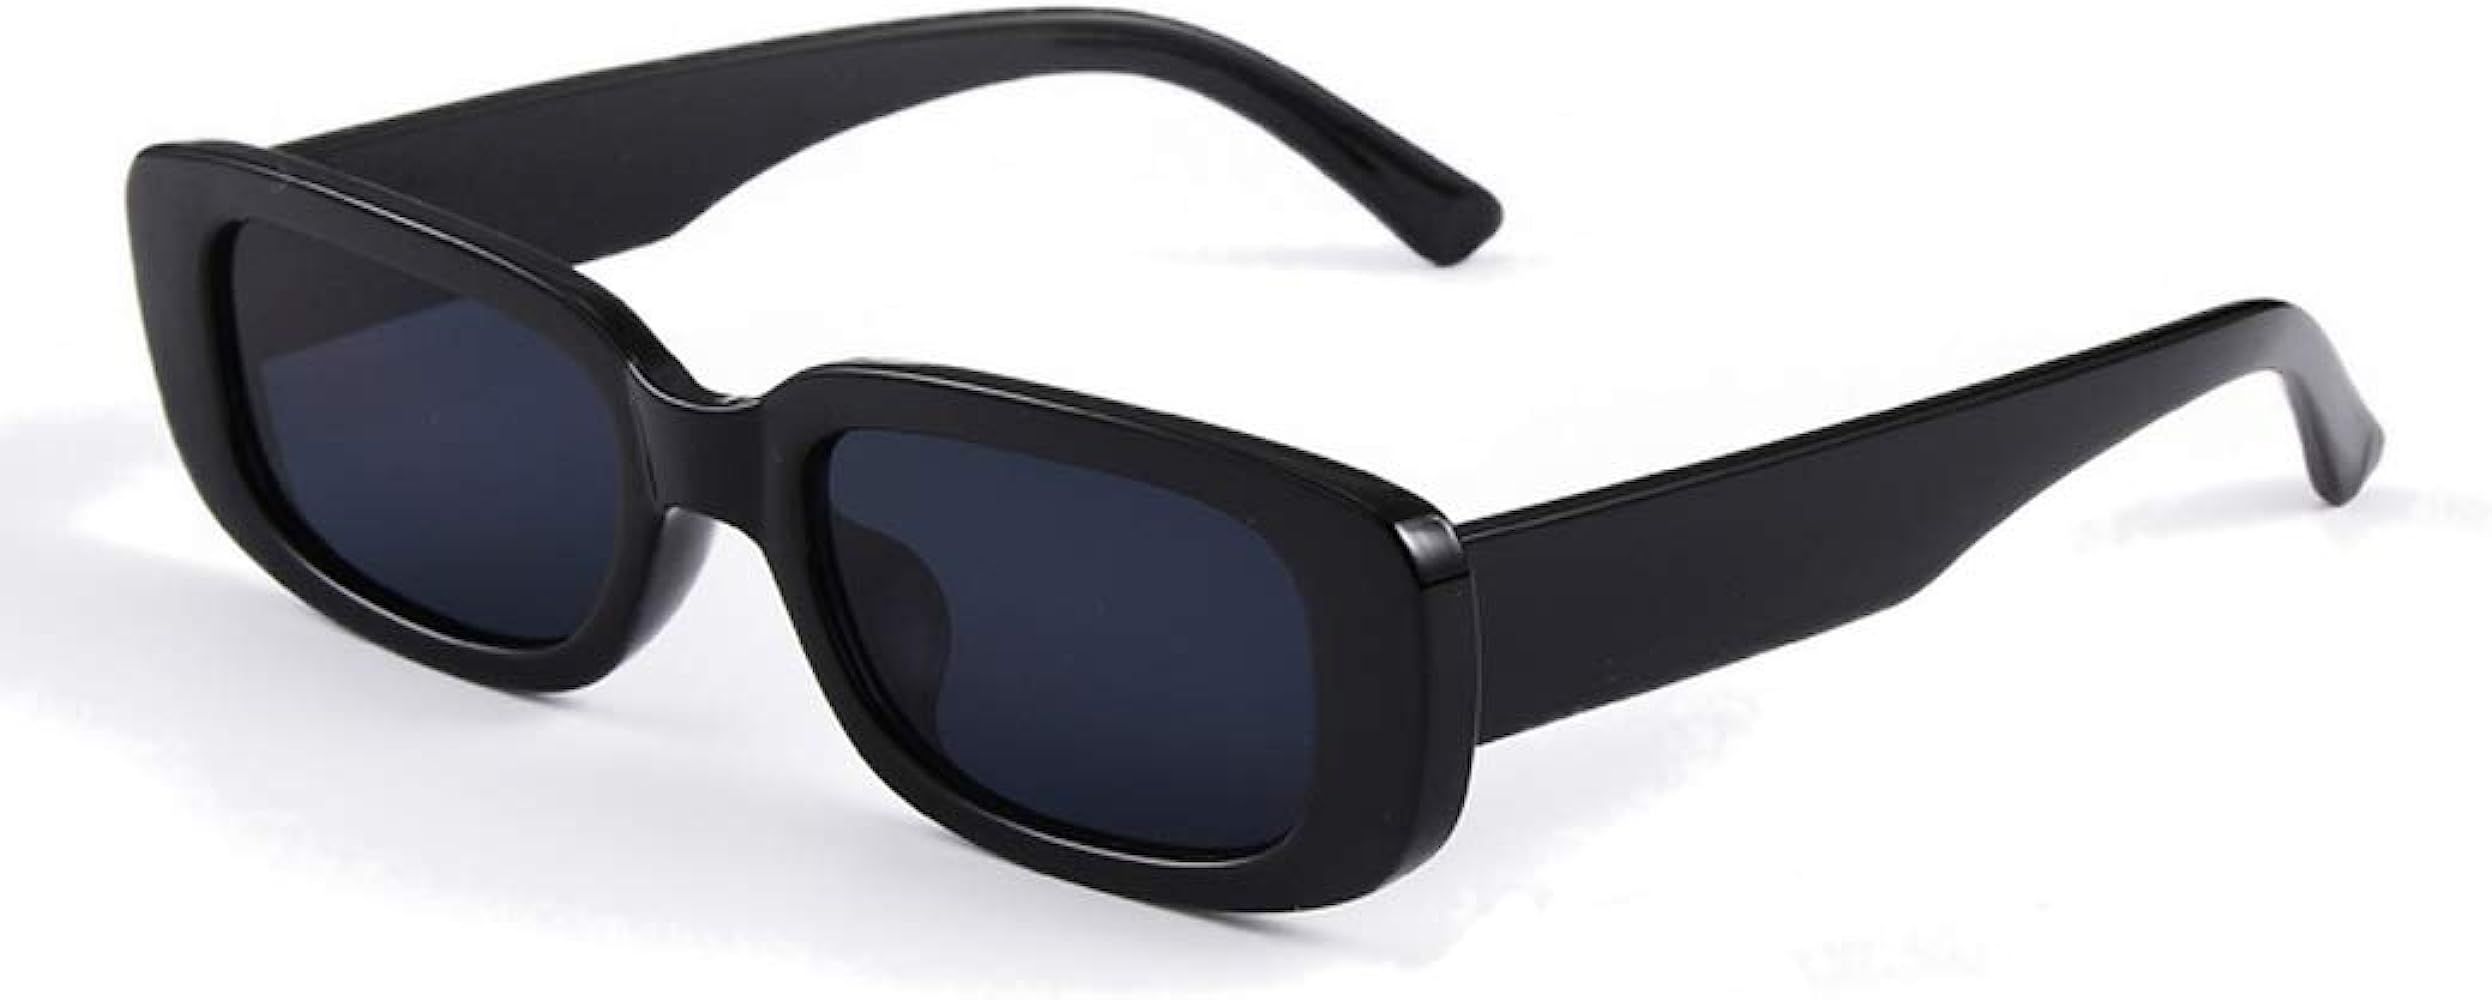 Small Rectangle Sunglasses Women UV 400 Retro Square Driving Glasses | Amazon (US)